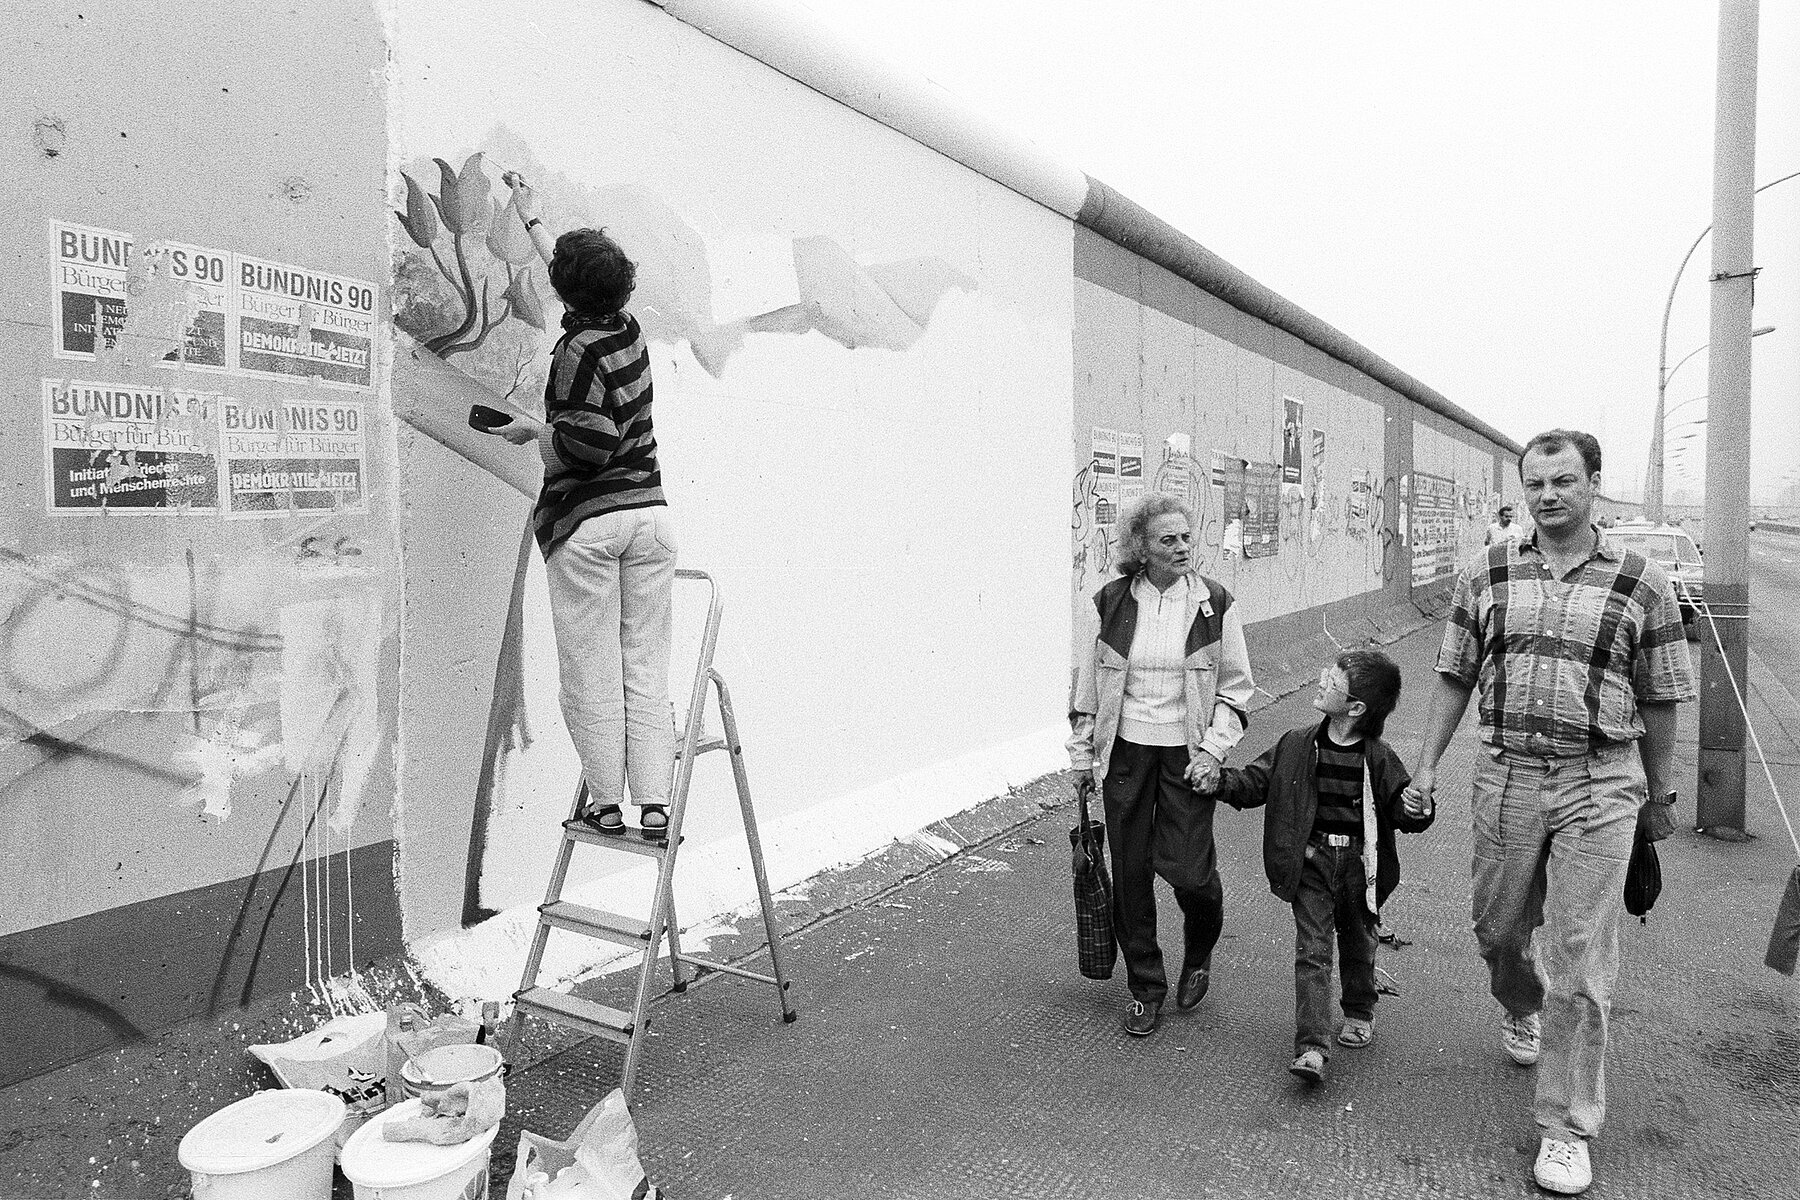 Links eine Person auf einer Leiter, die ein großes Bild auf die Mauer malt. rechts geht eine Familie mit einem Kind vorbei.